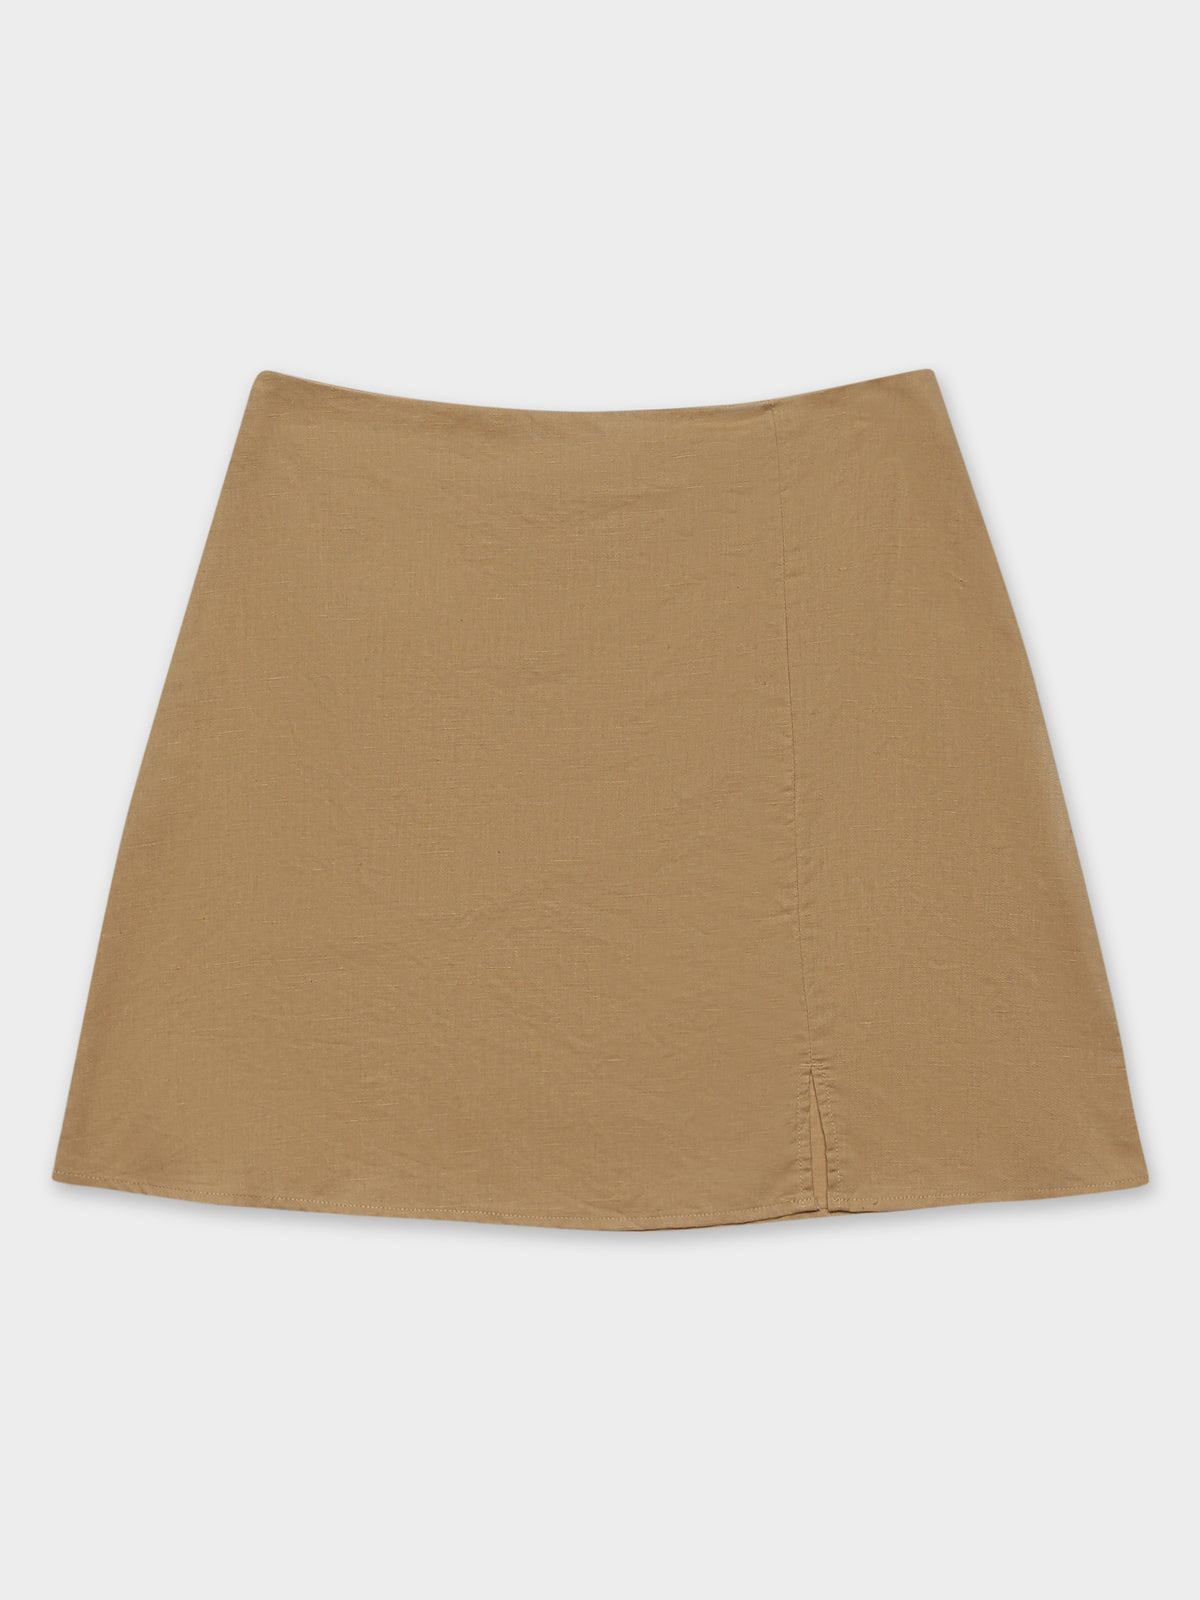 Nima Linen Mini Skirt in Caramel Brown